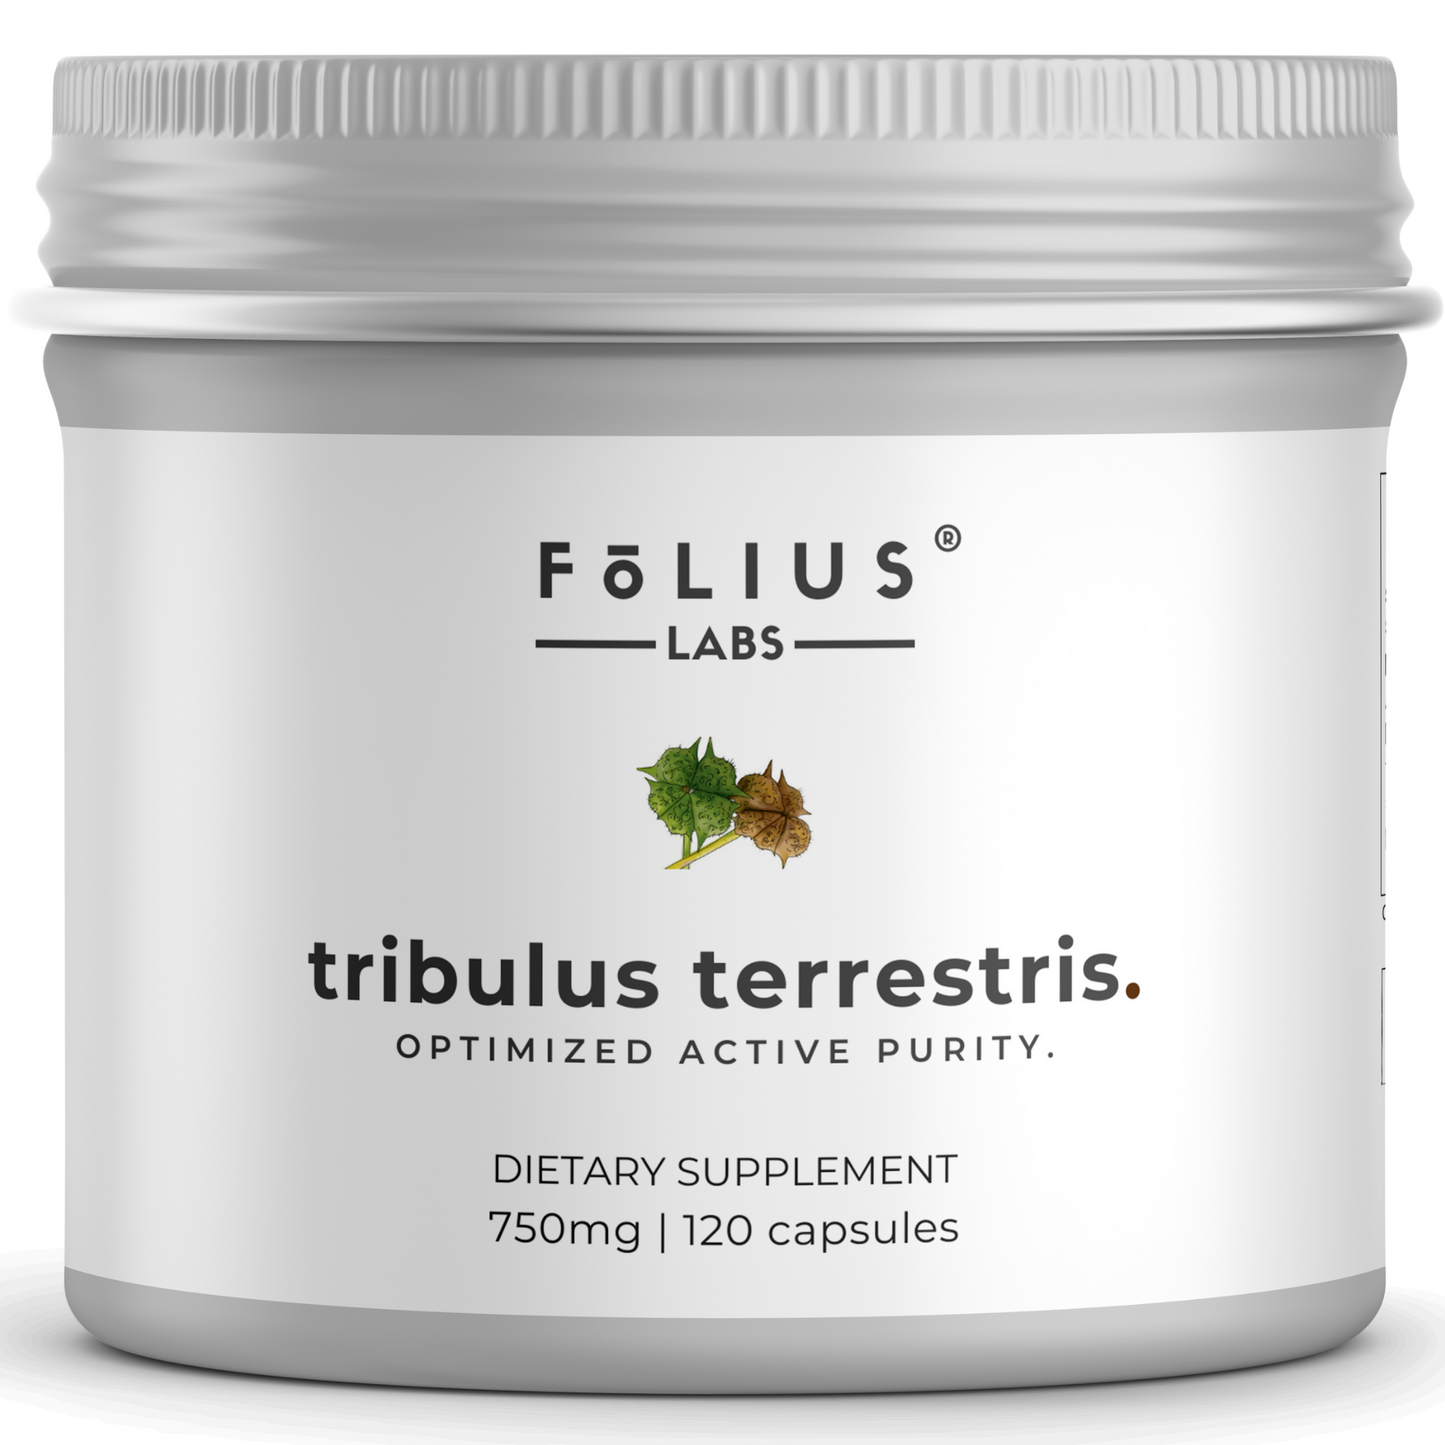 Tribulus Terrestris 40%